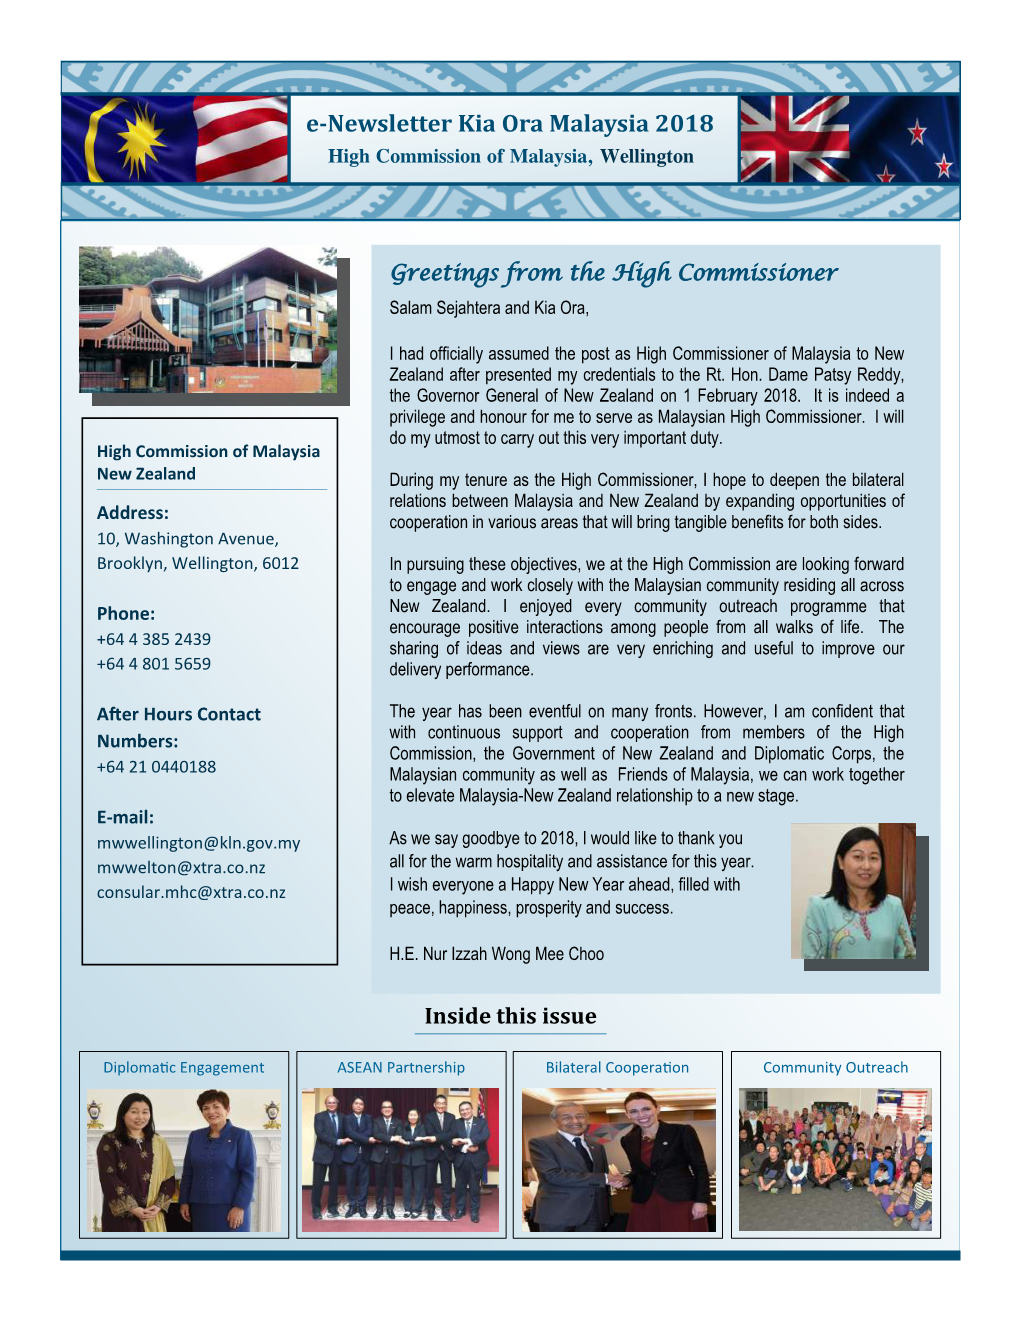 E-Newsletter Kia Ora Malaysia 2018 High Commission of Malaysia, Wellington